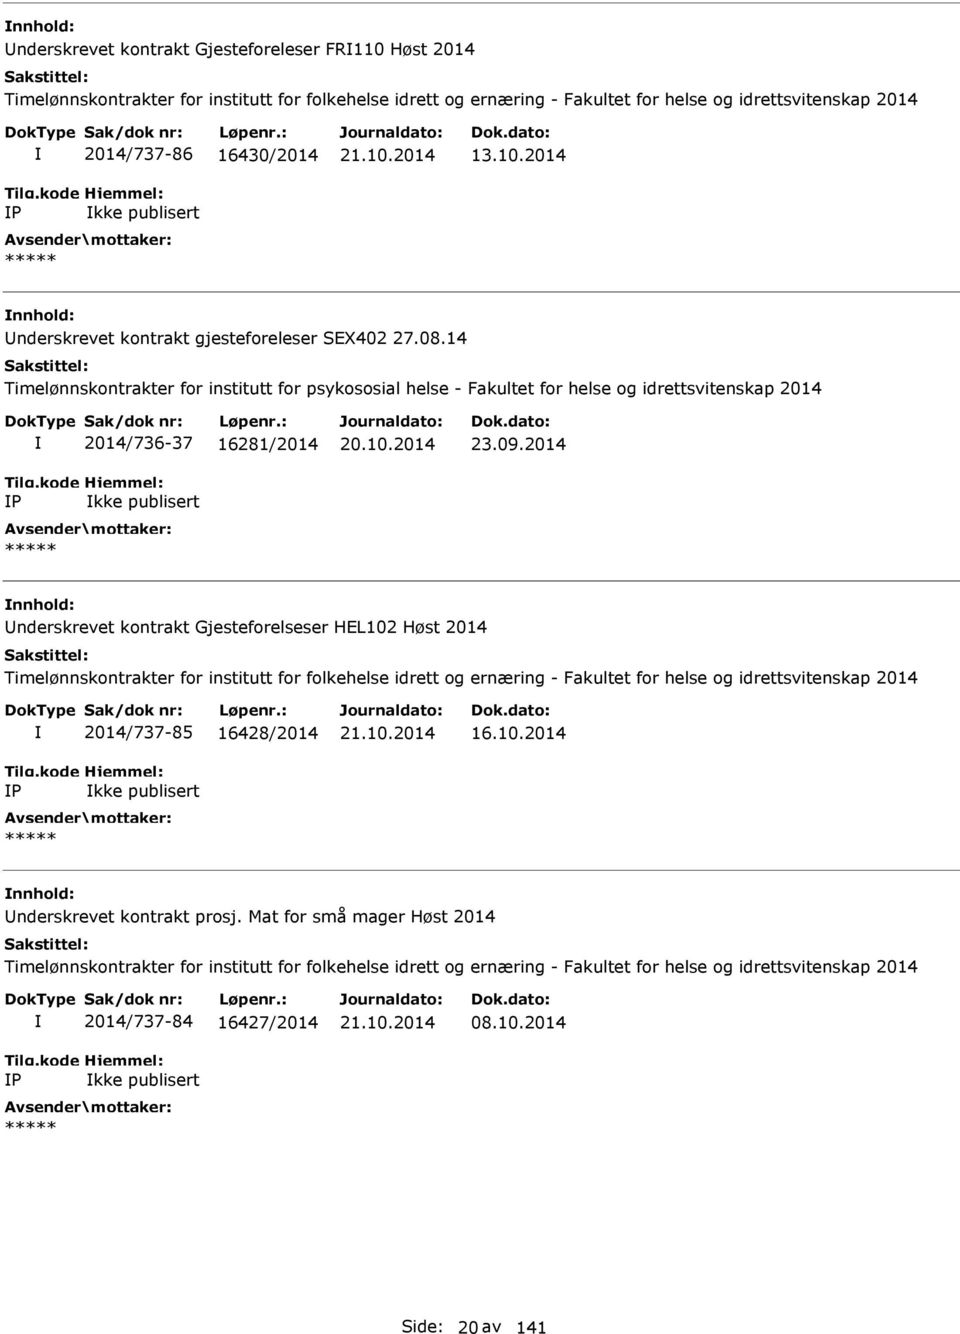 14 Timelønnskontrakter for institutt for psykososial helse - Fakultet for helse og idrettsvitenskap 2014 P 2014/736-37 16281/2014 kke publisert ***** 20.10.2014 23.09.